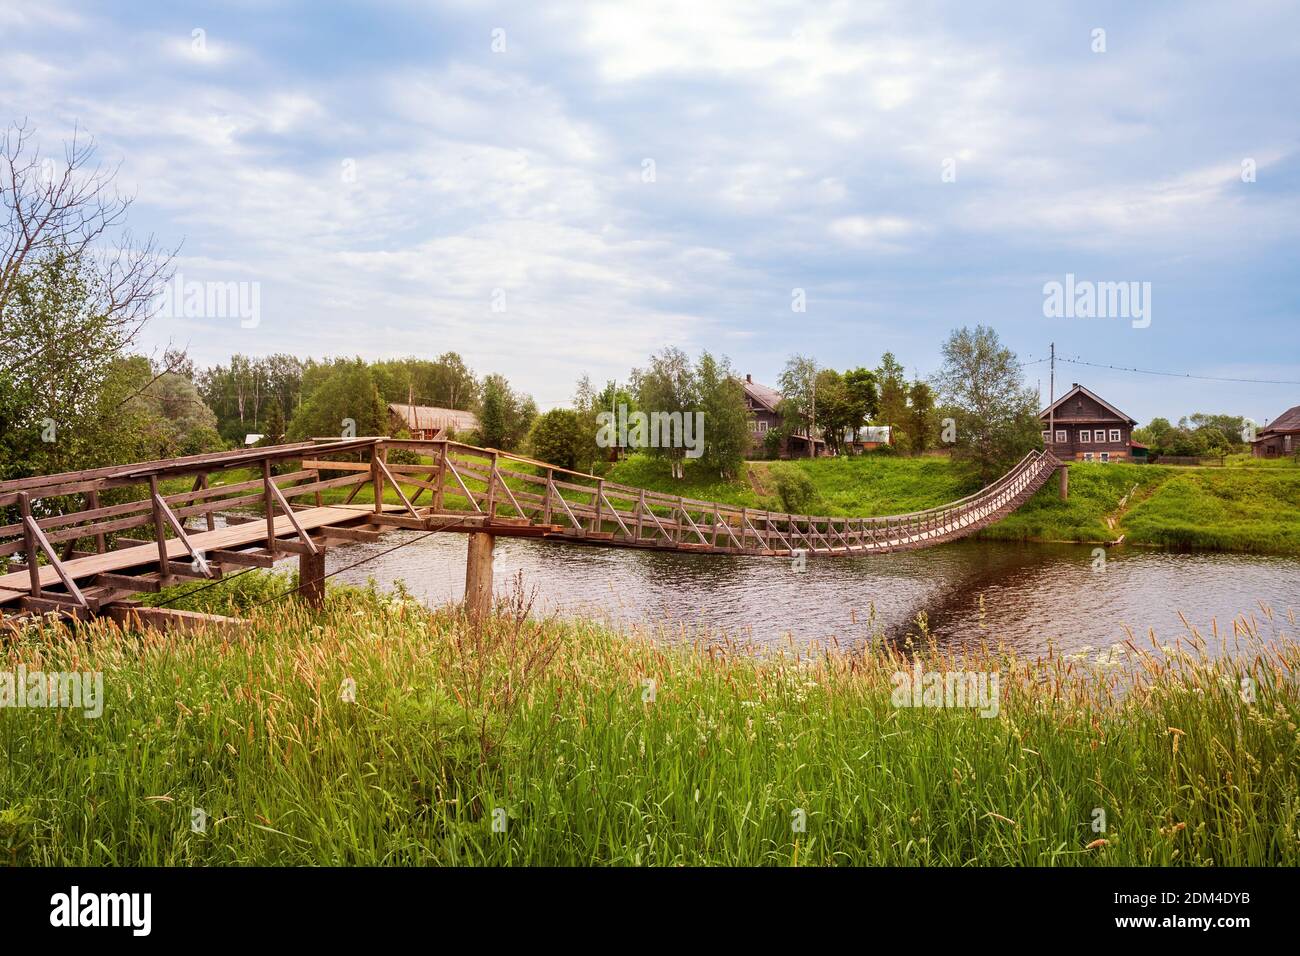 Wooden suspension pedestrian bridge in the village across the Olonka river, Karelia, Russia Stock Photo